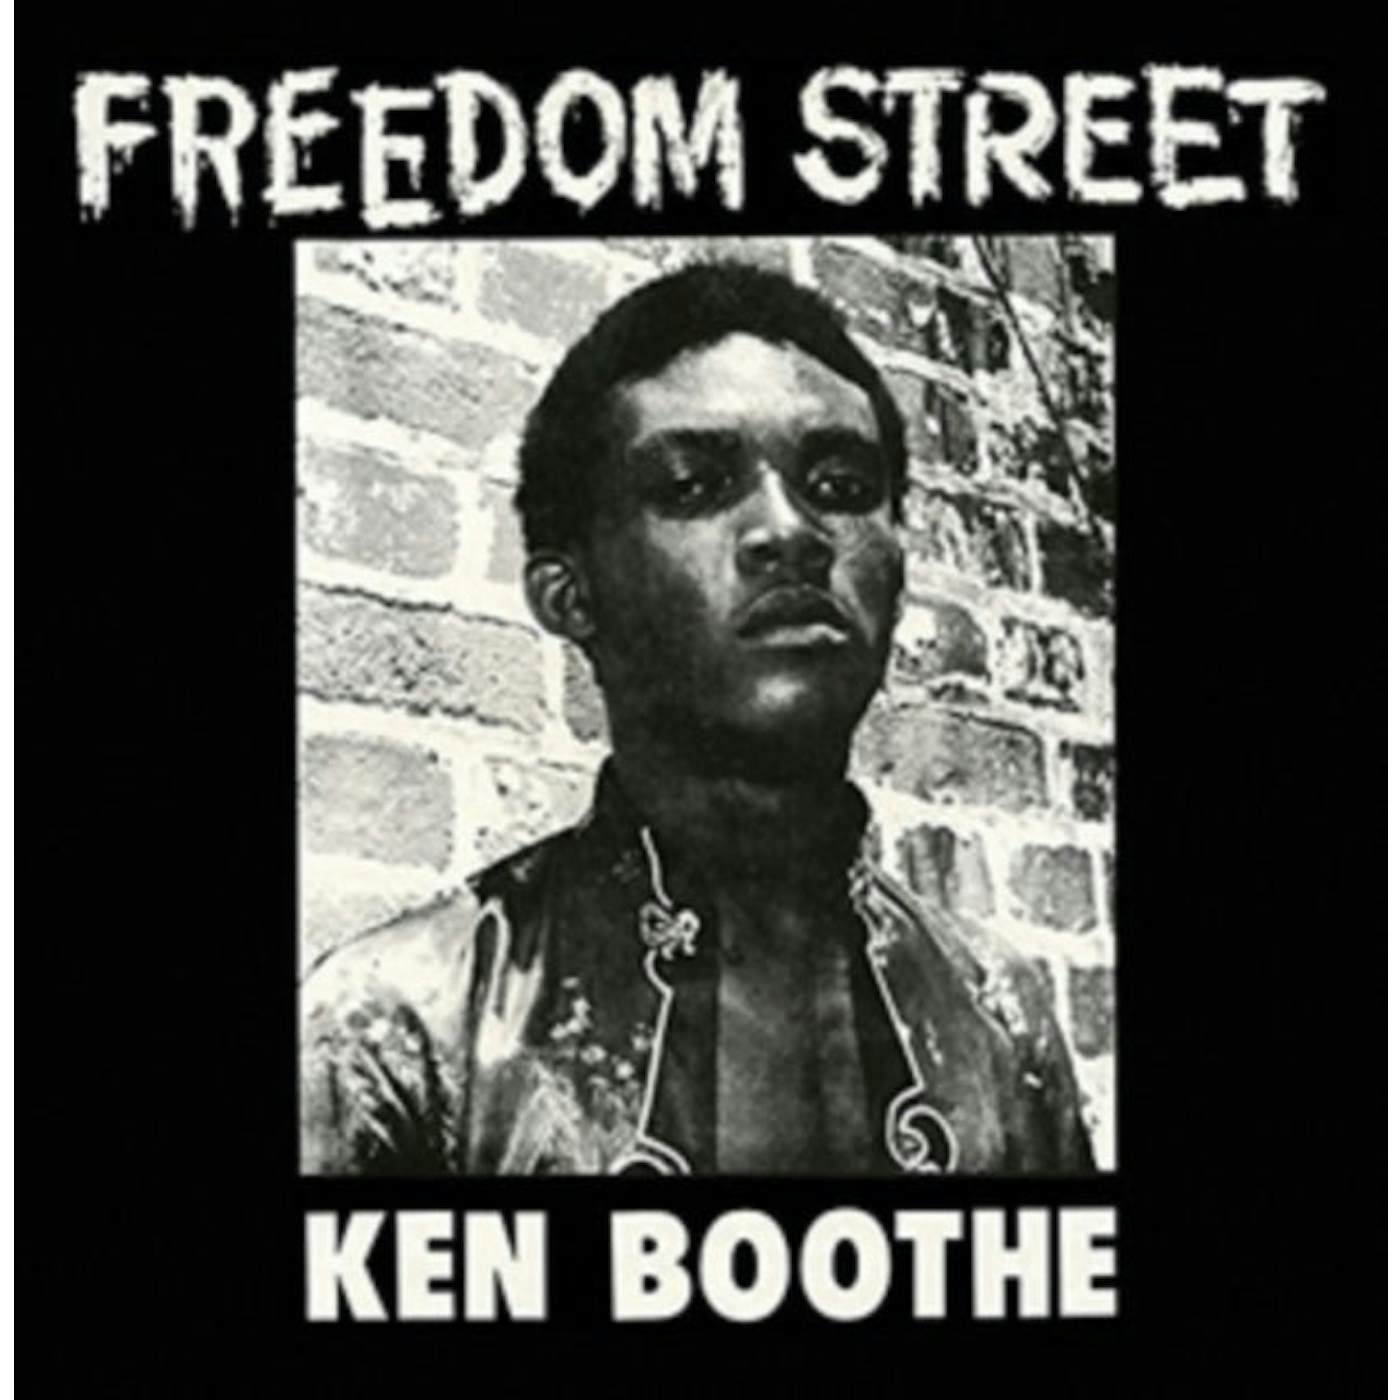 Ken Boothe LP - Freedom Street (Red & Yellow S (Vinyl)